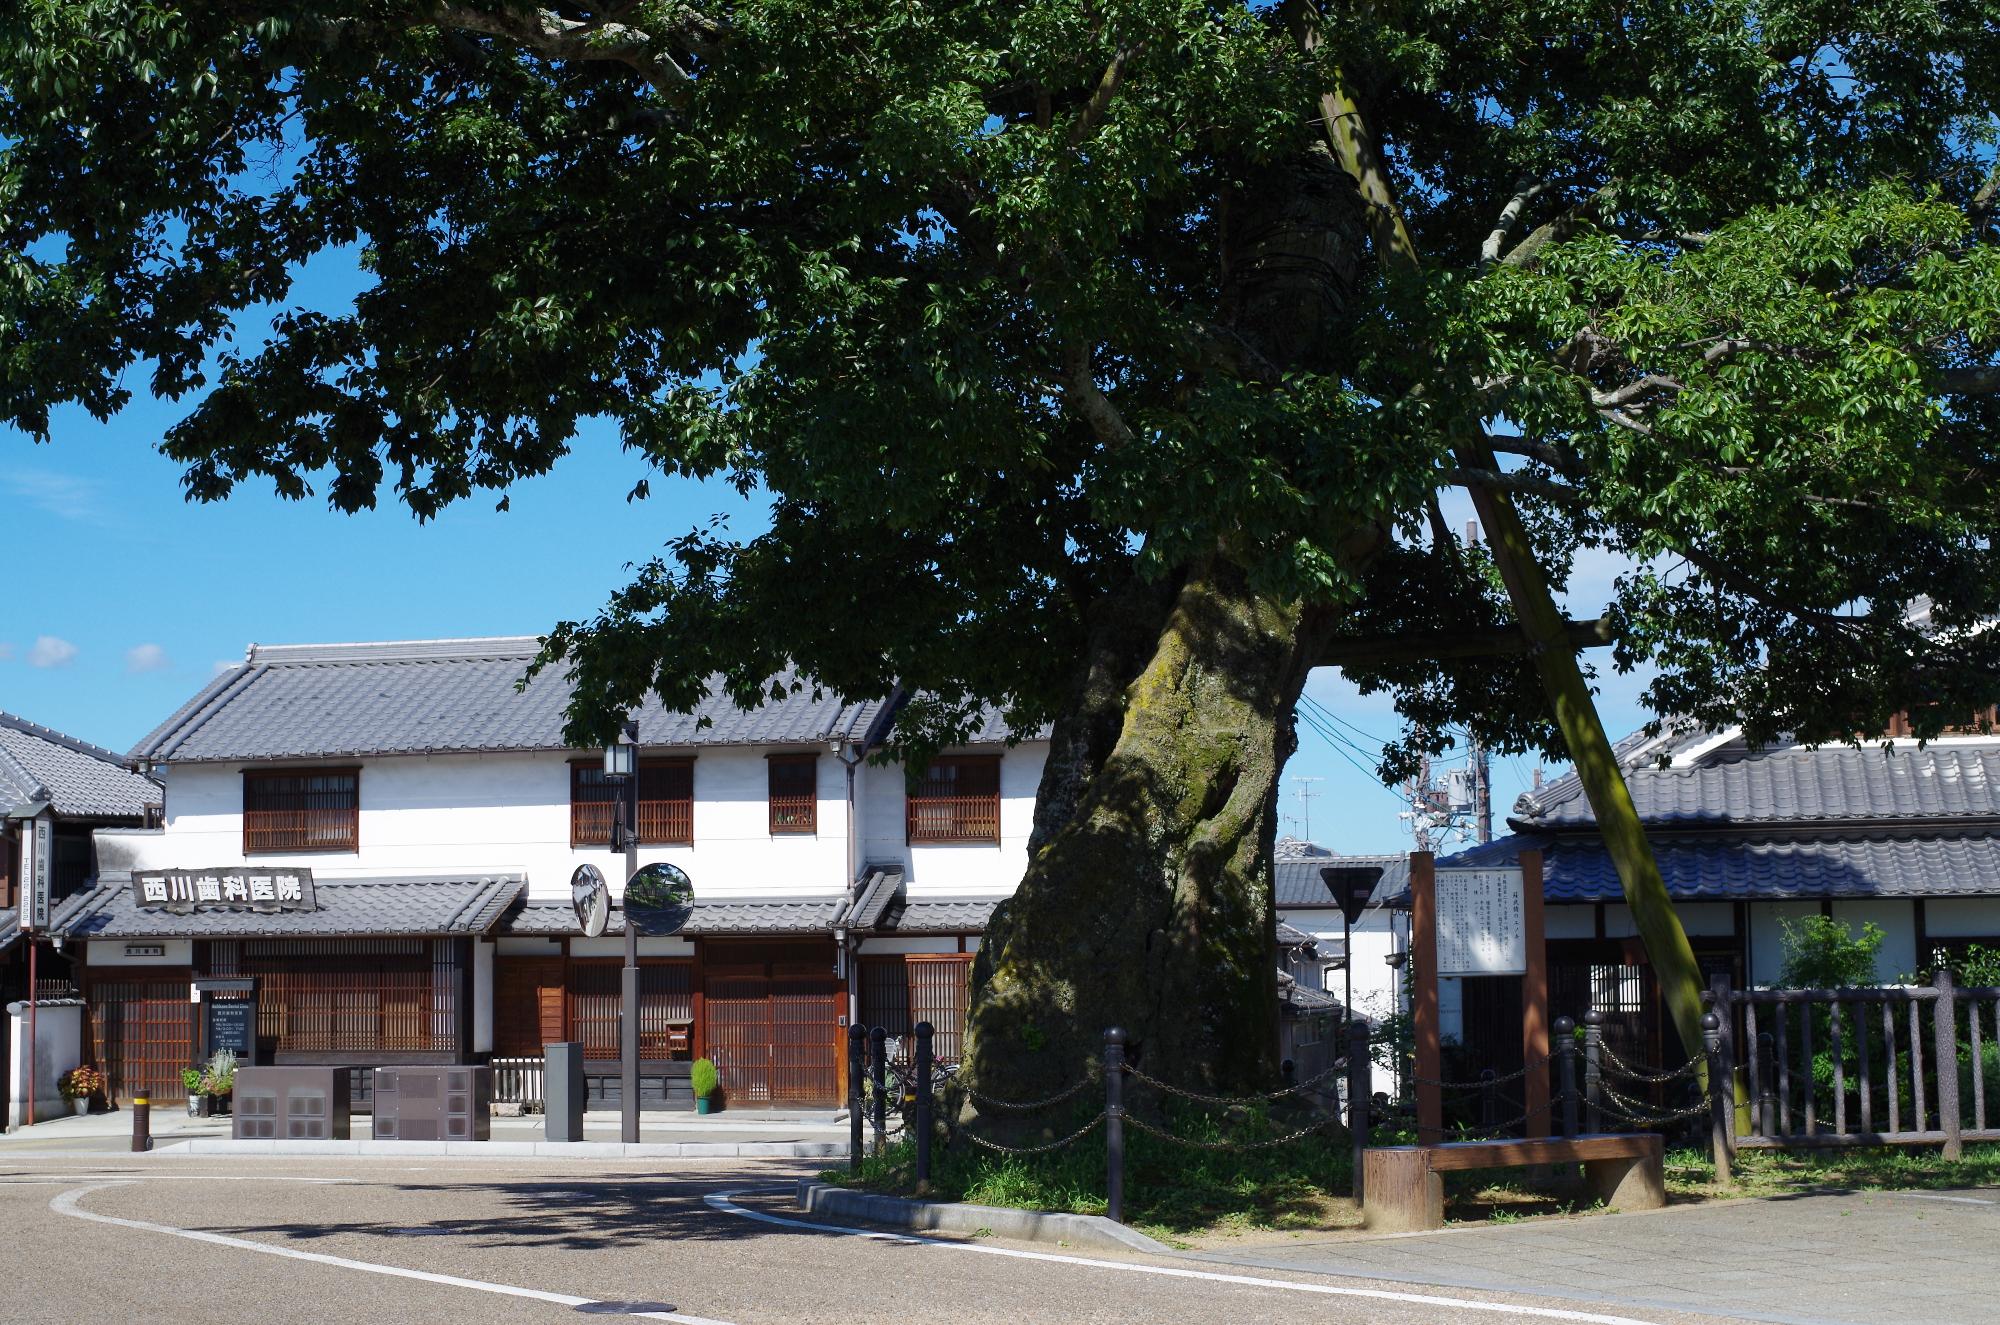 今井町の玄関口にある大きなエノキの木の写真